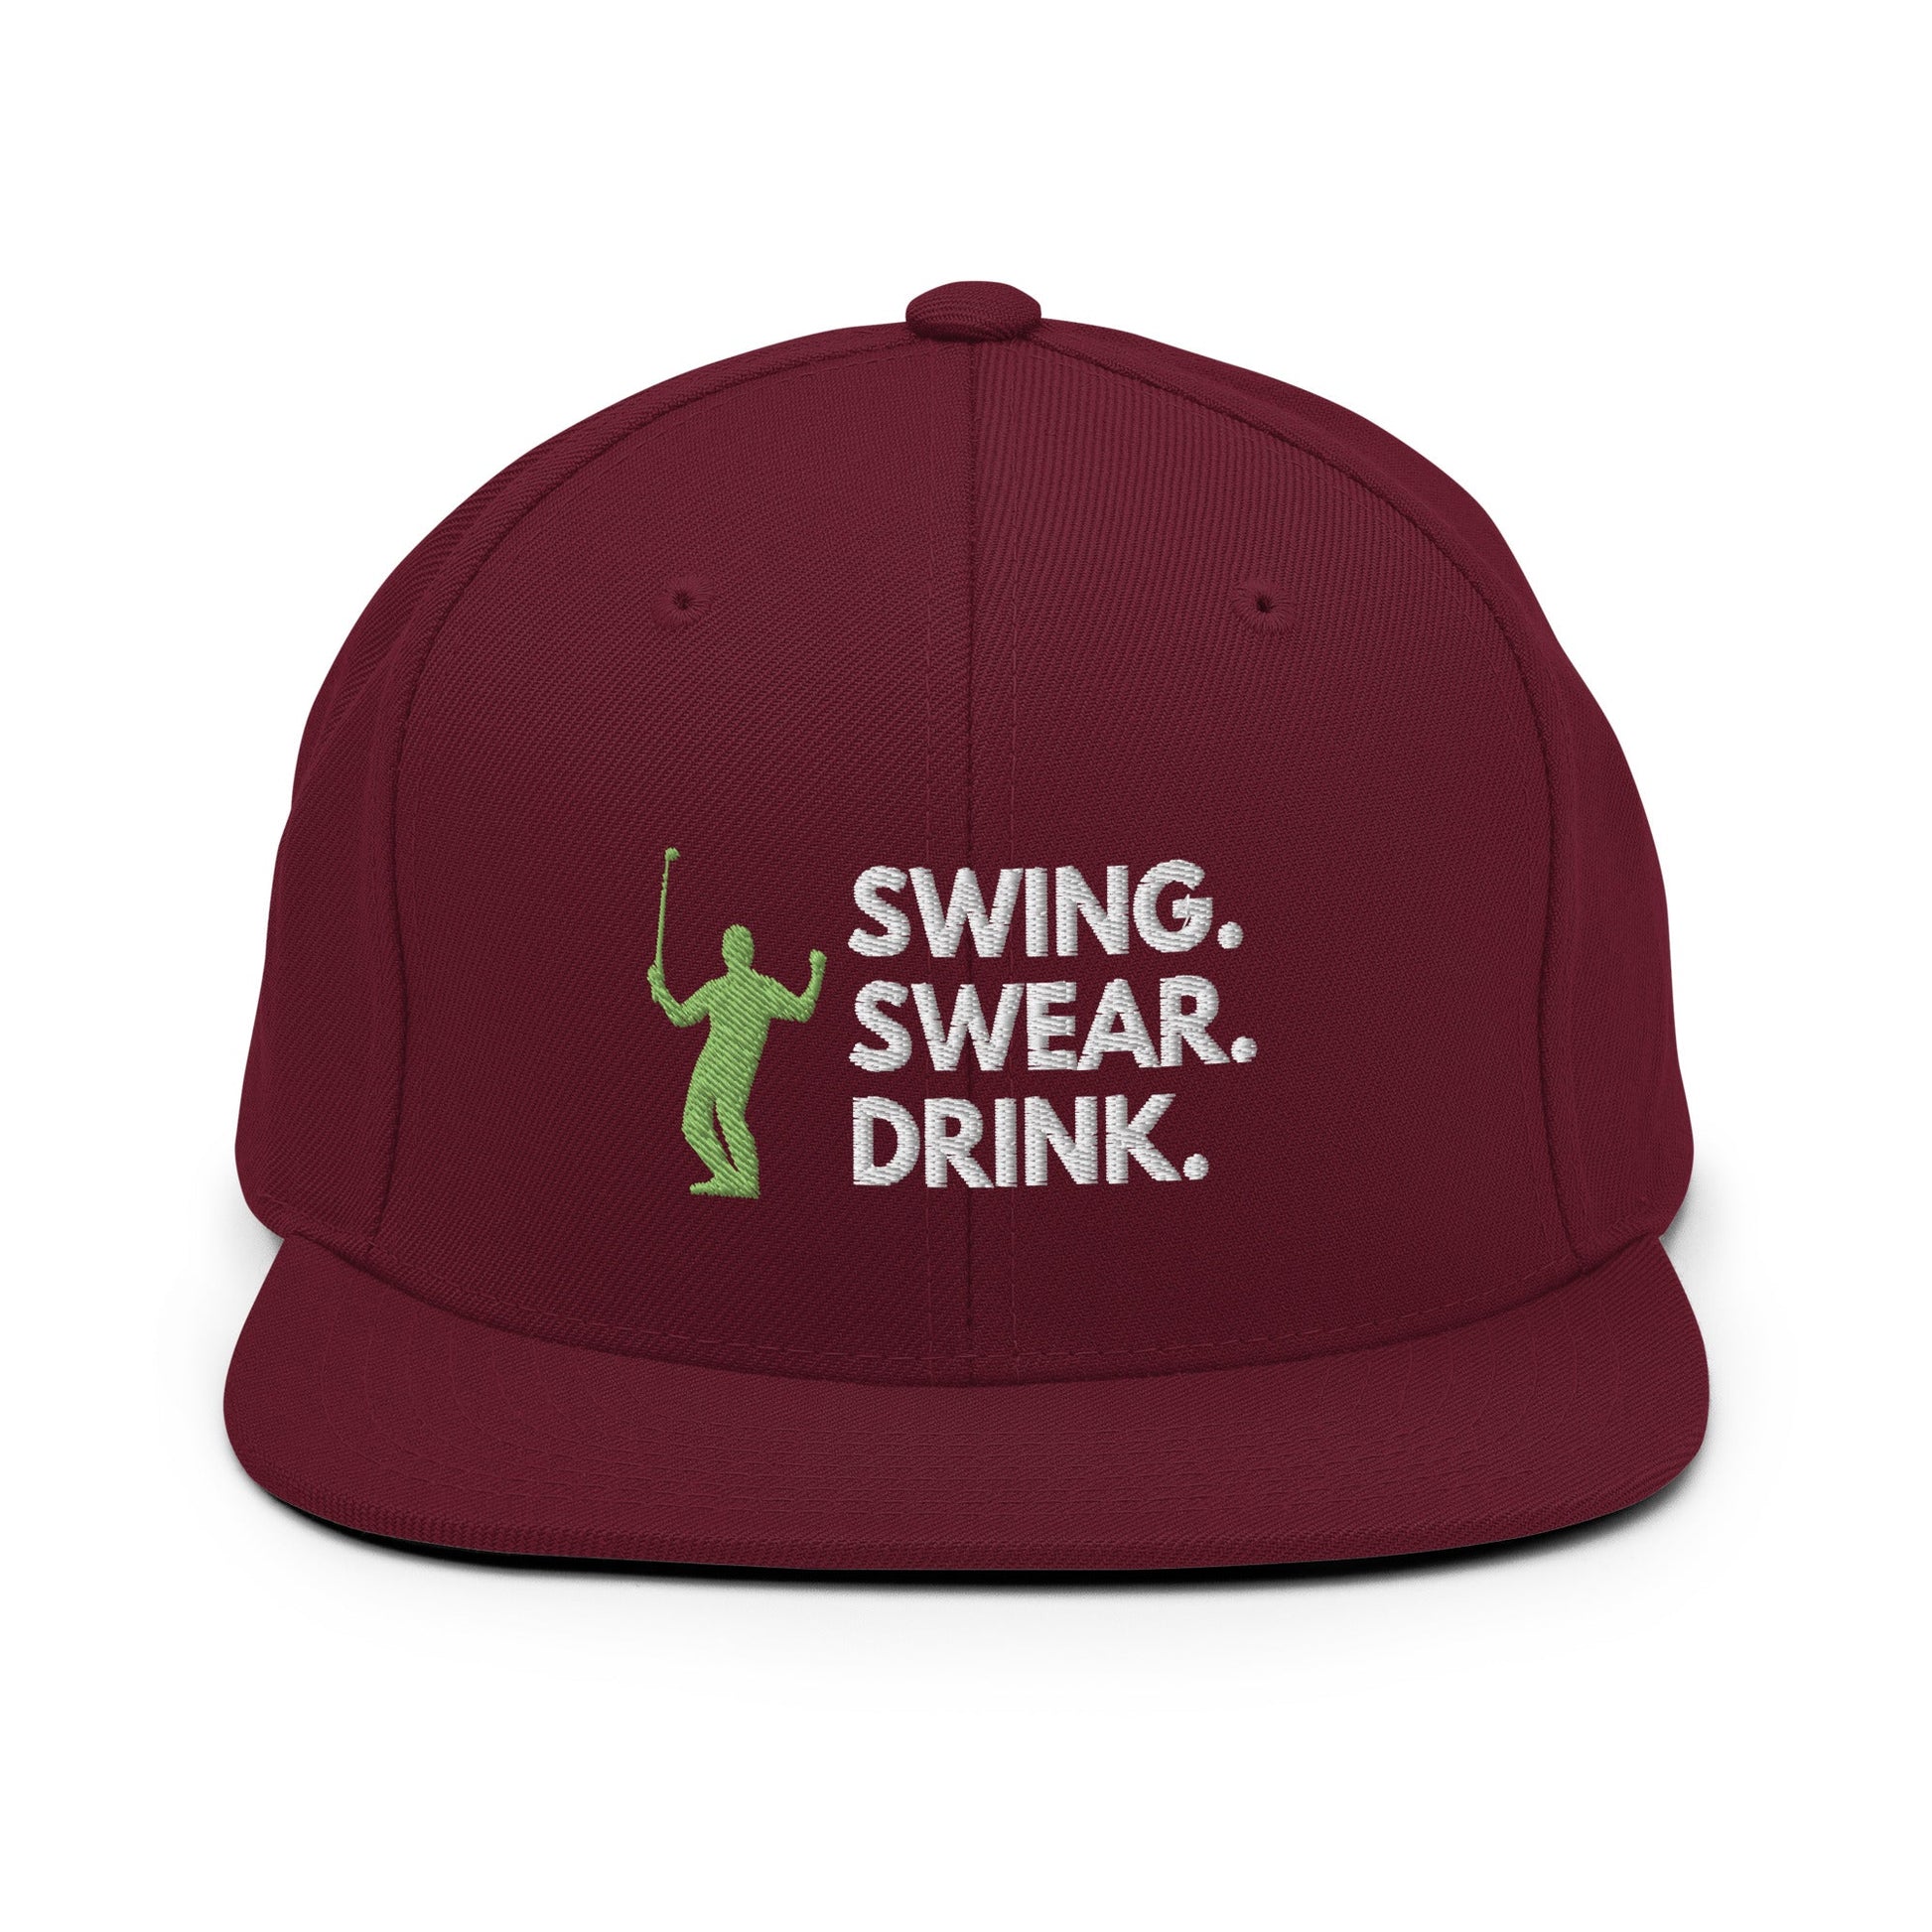 Funny Golfer Gifts  Snapback Hat Maroon Swing. Swear. Drink Snapback Hat